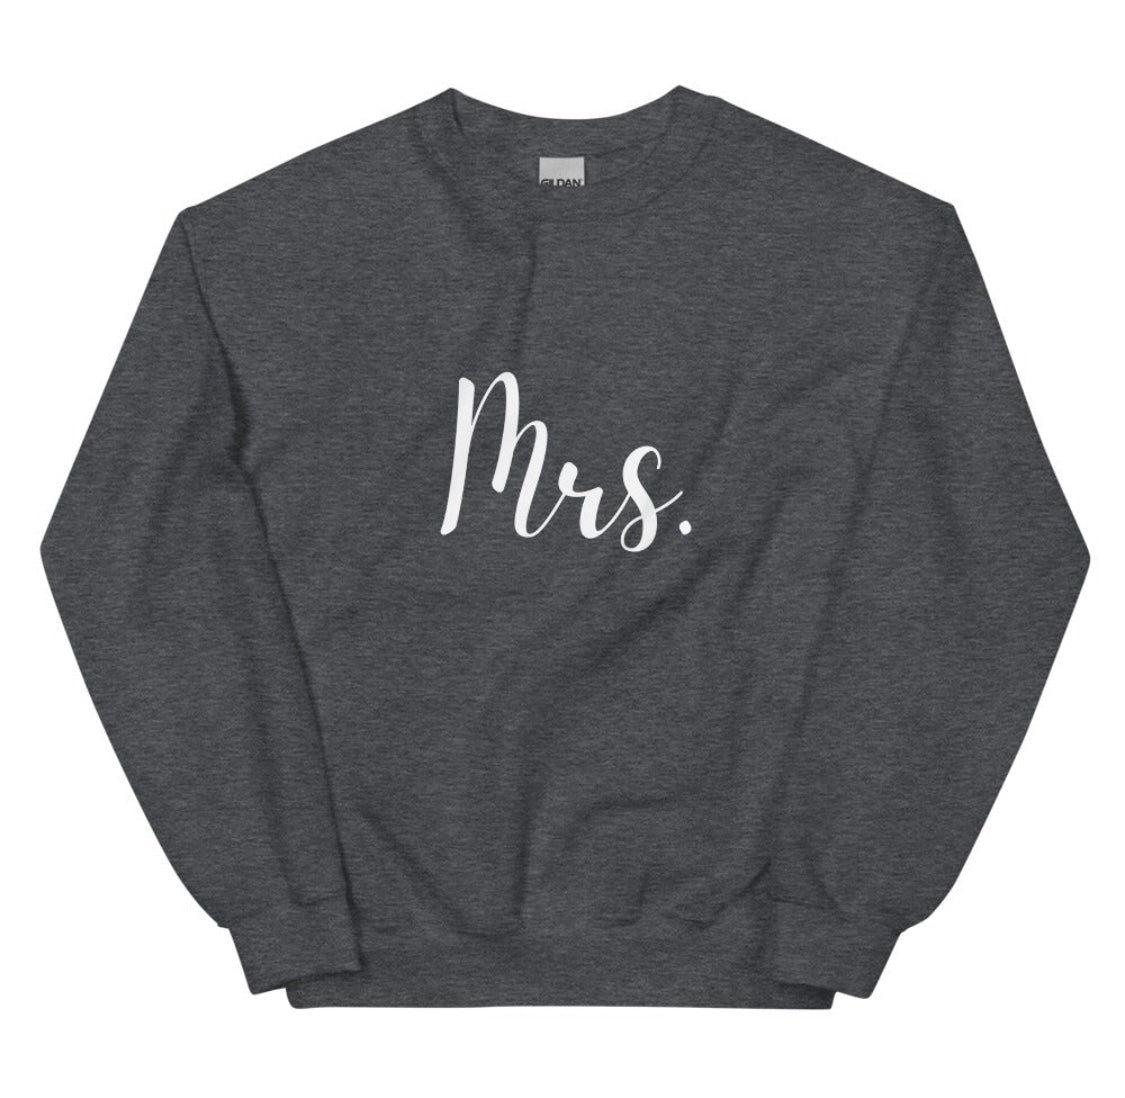 "Mrs." Dark Heather Gray Sweatshirt